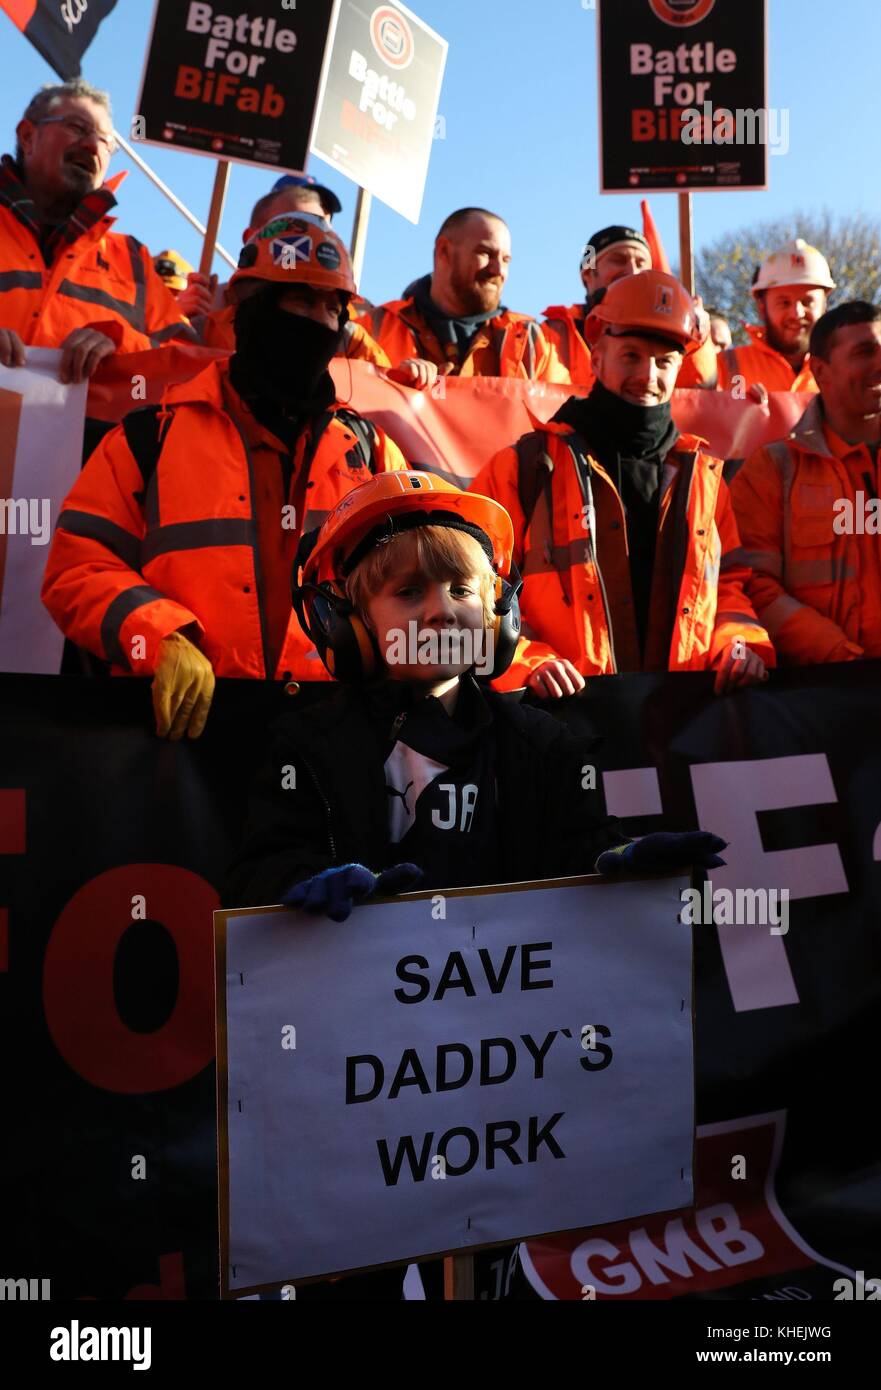 Jay Anthony (6) di Burntisland si unisce ai lavoratori della ditta di fabbricazione BIFab march, che ha colpito la crisi, fino a Edimburgo, al Parlamento scozzese per sensibilizzare maggiormente la loro situazione. Foto Stock